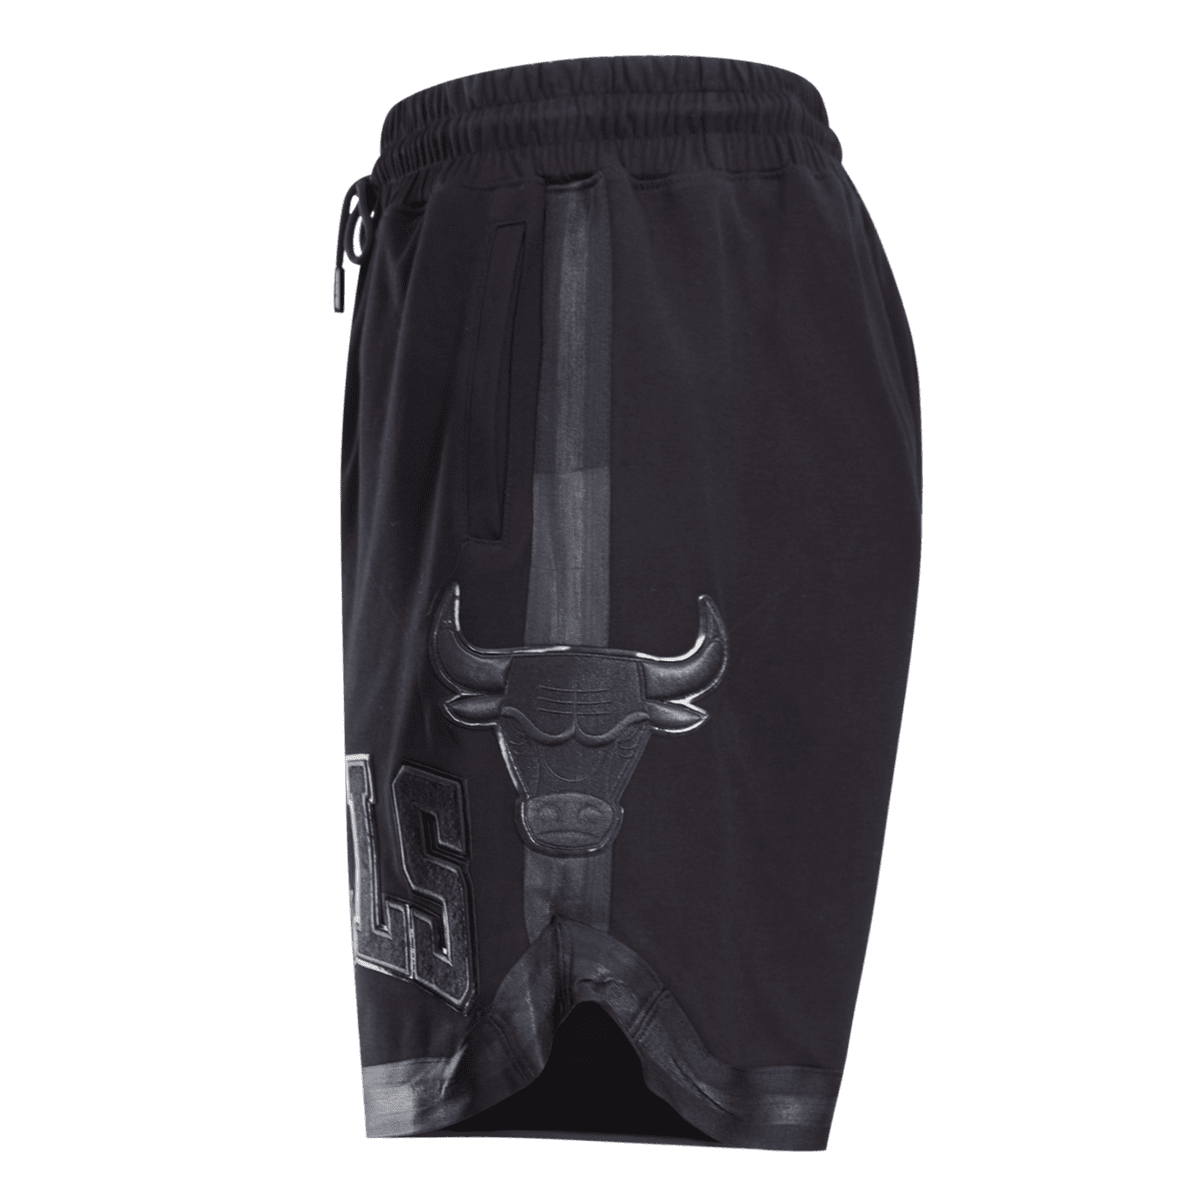 Pro Standard Mens Bulls Mini Logo Woven Shorts - Black/Black Size XL